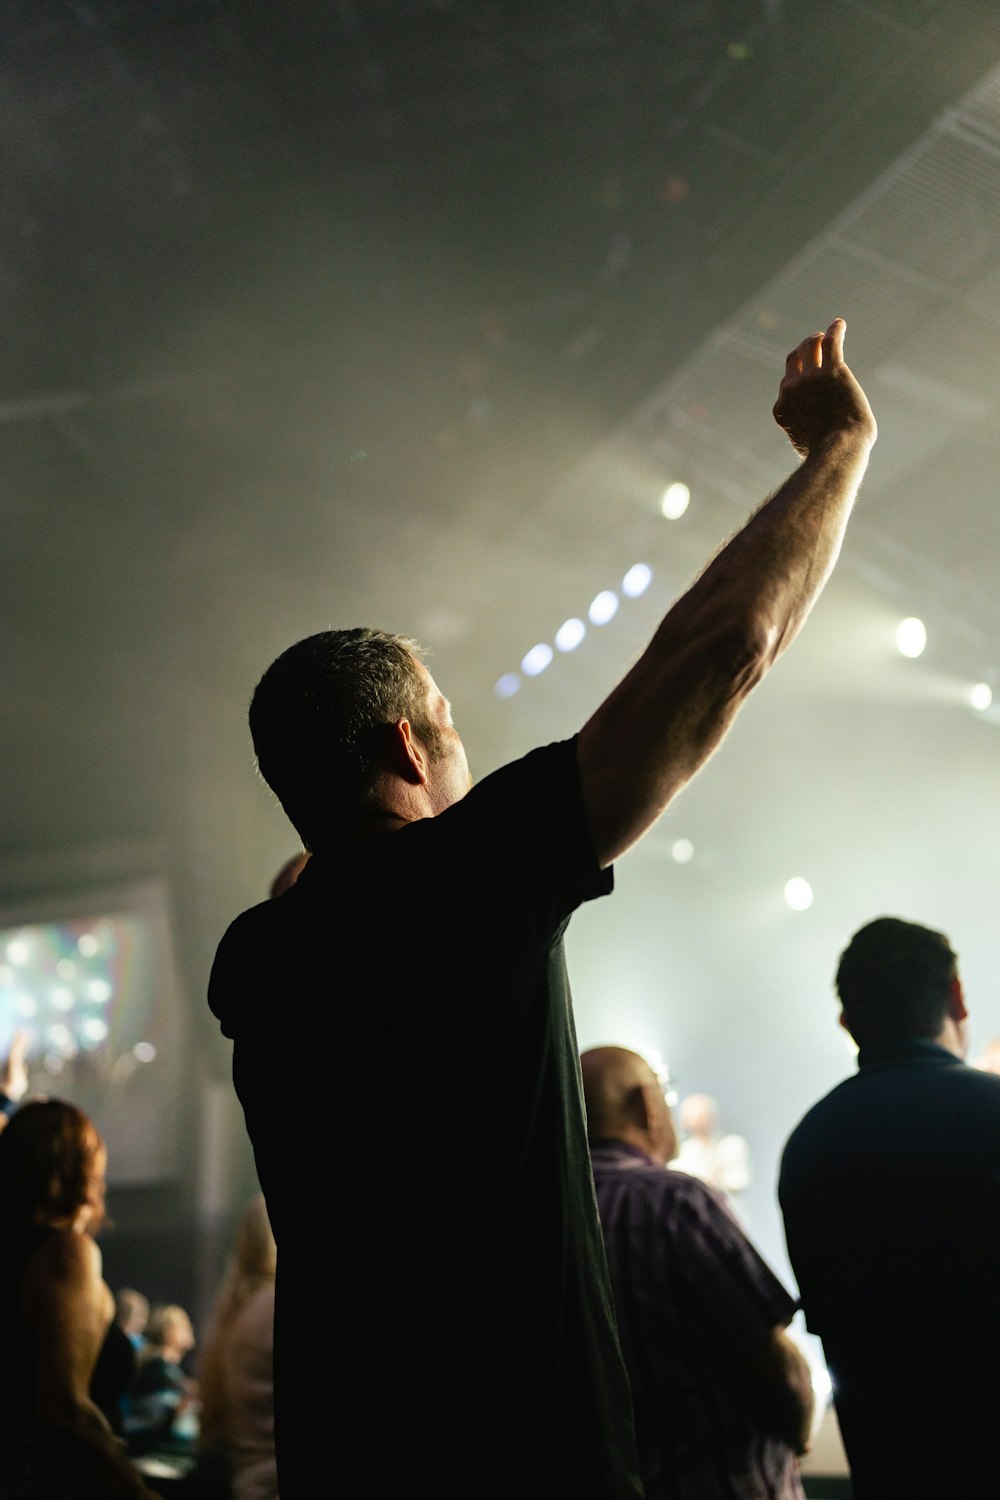 a man raising his arm in the air at a concert